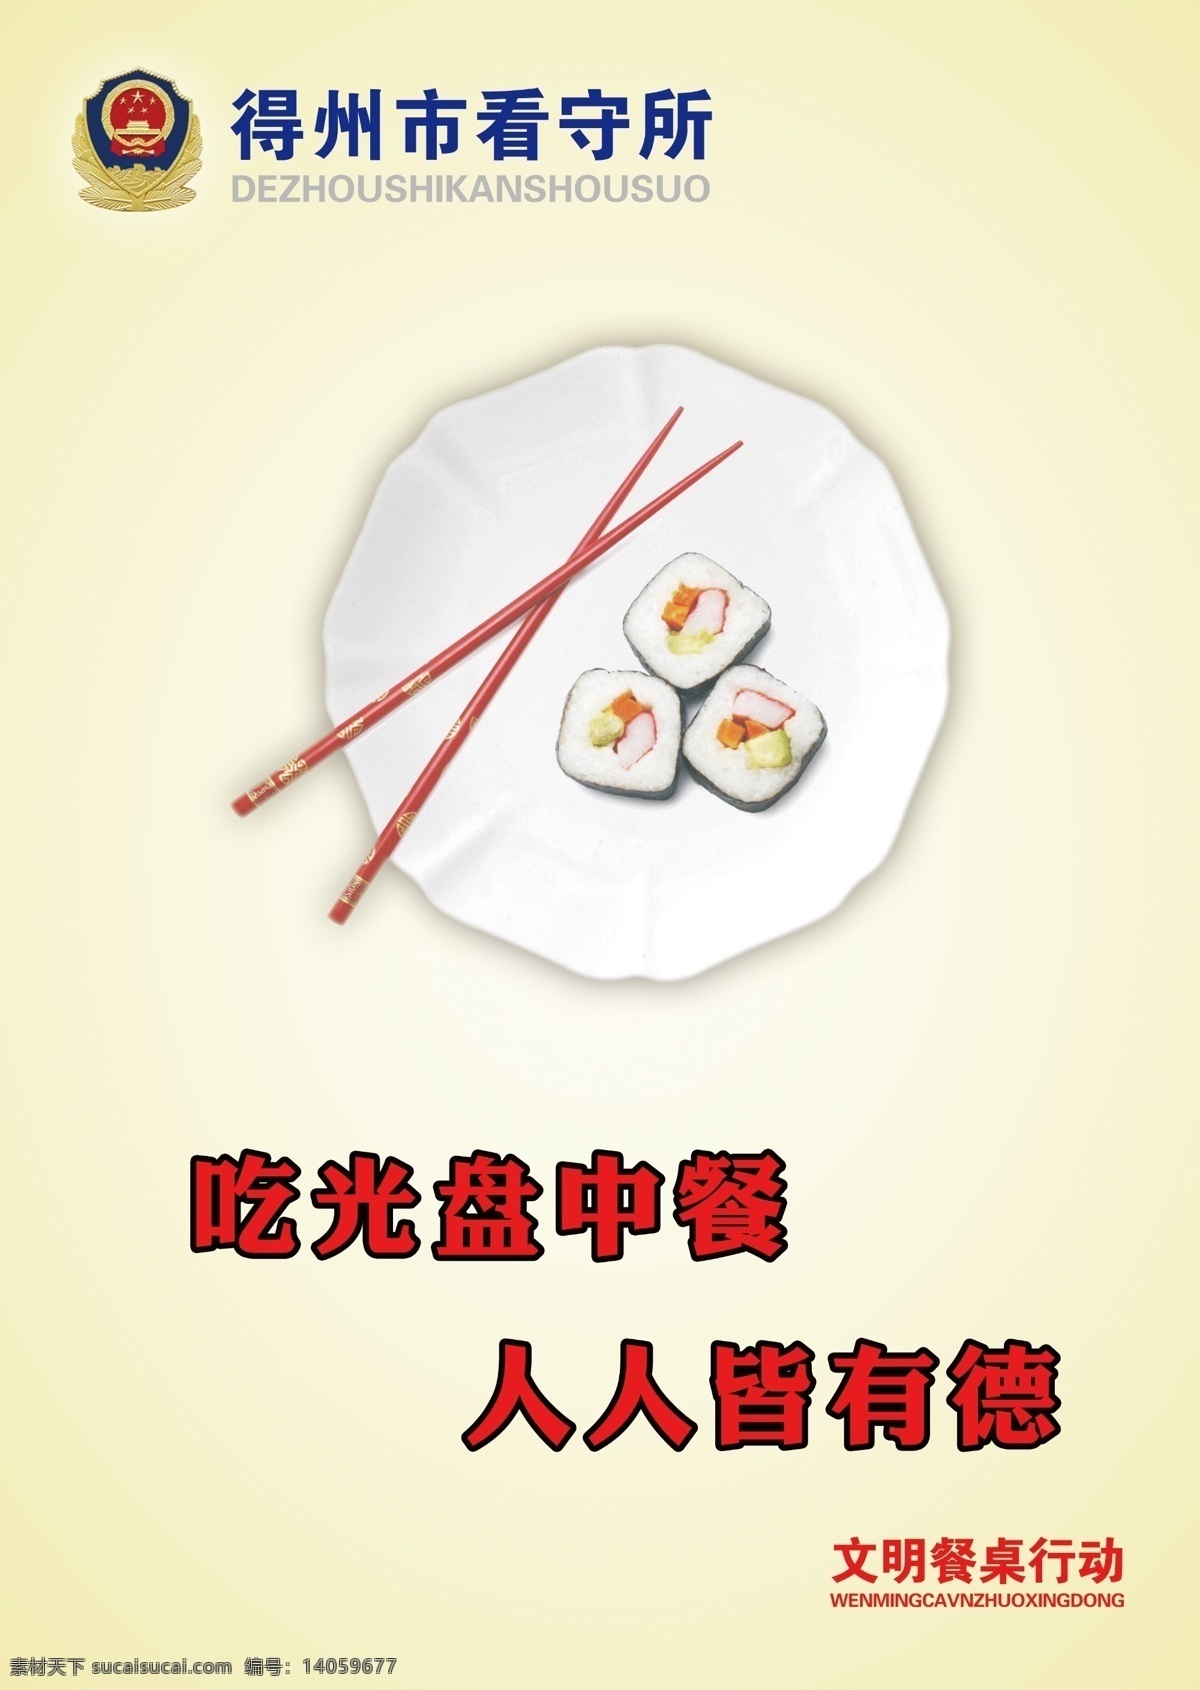 光盘 行动 宣传 口号 光盘行动口号 盘子 筷子 寿司 看守所 警徽 文明用餐提示 psd源文件